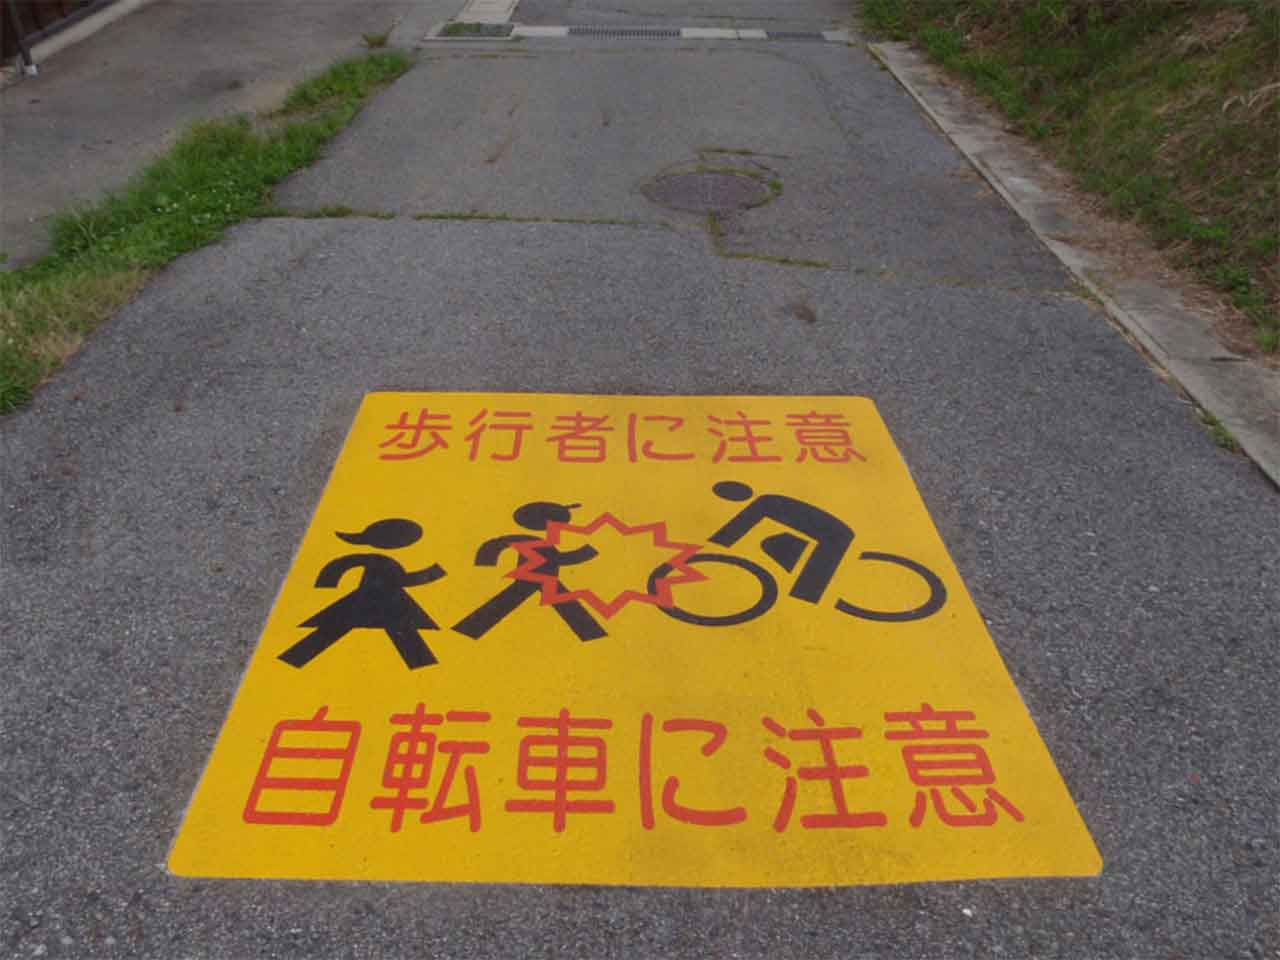 歩行者に注意　自転車に注意